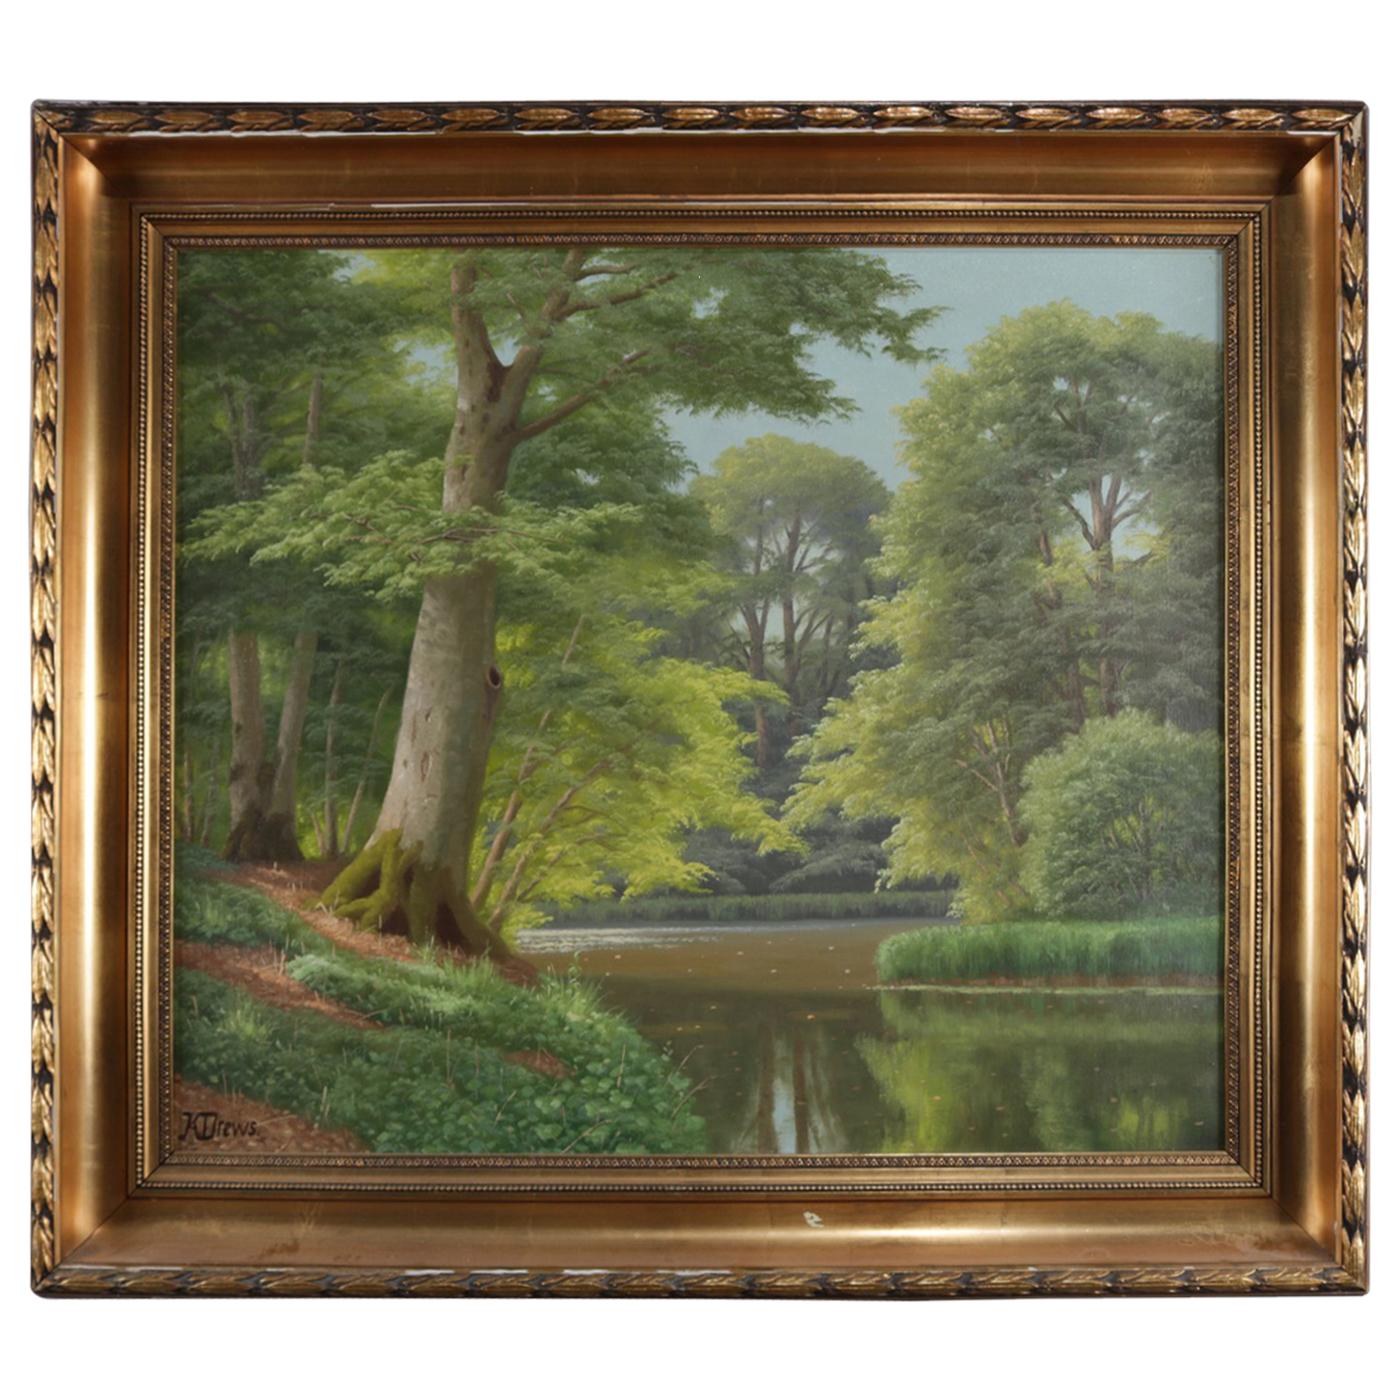 Vintage Oil on Canvas Landscape Painting, River Scene, Signed K. Drews